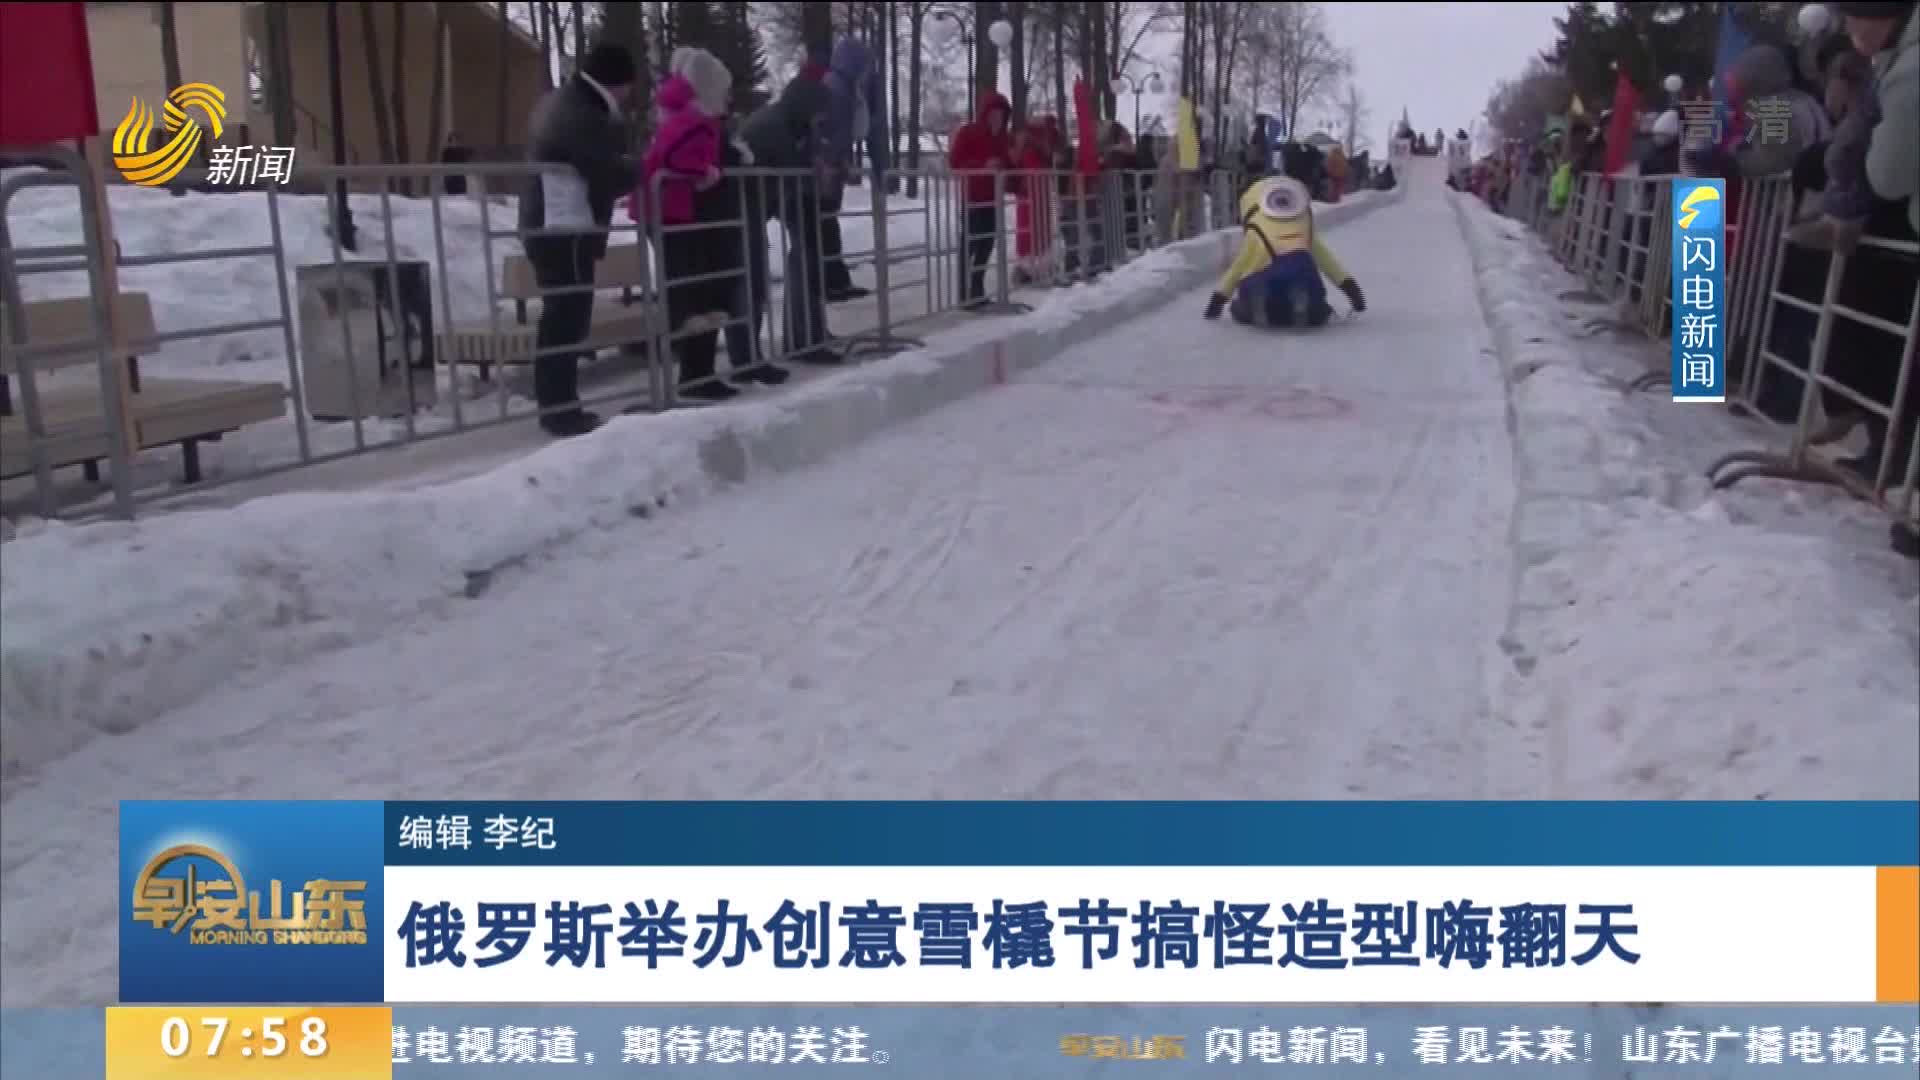 俄罗斯举办创意雪橇节搞怪造型嗨翻天